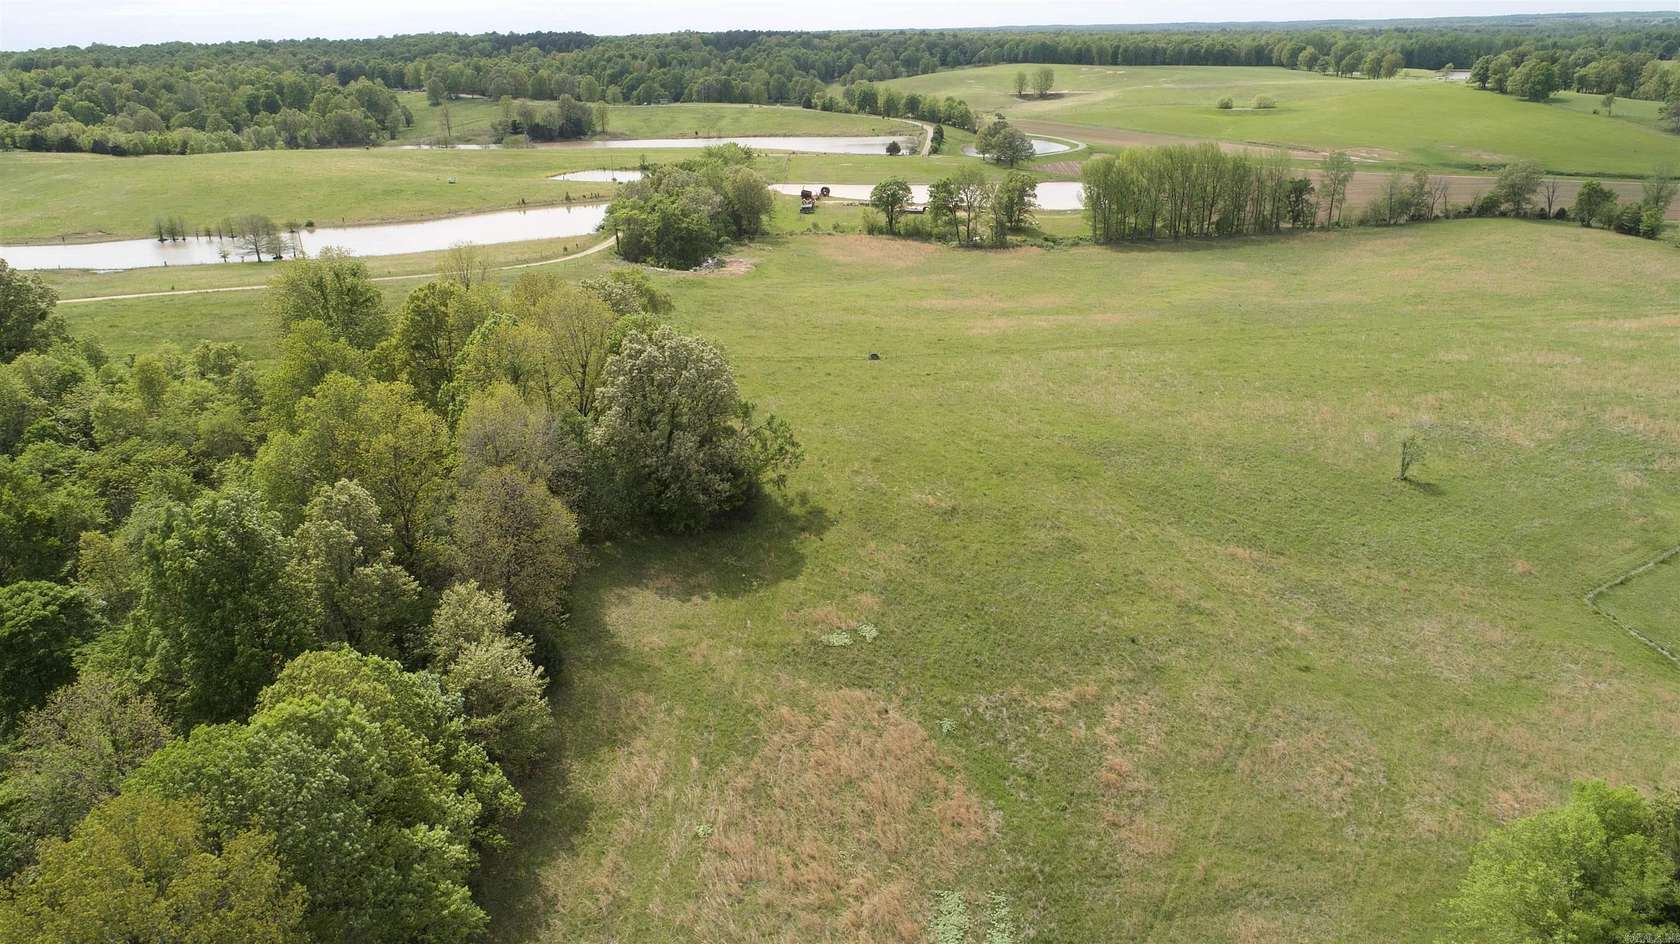 27 Acres of Agricultural Land for Sale in Piggott, Arkansas